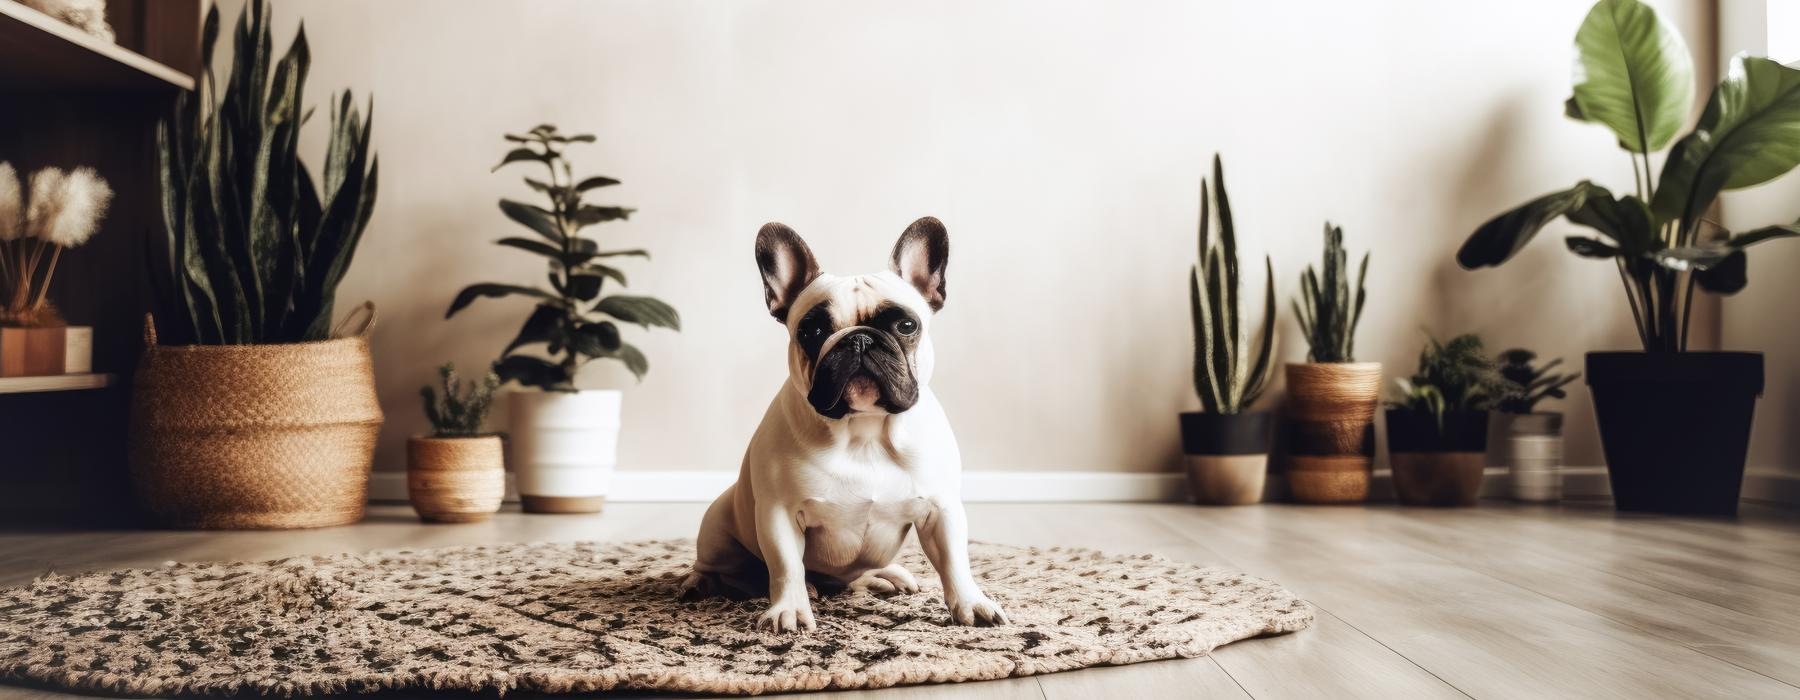 a dog sitting on a rug